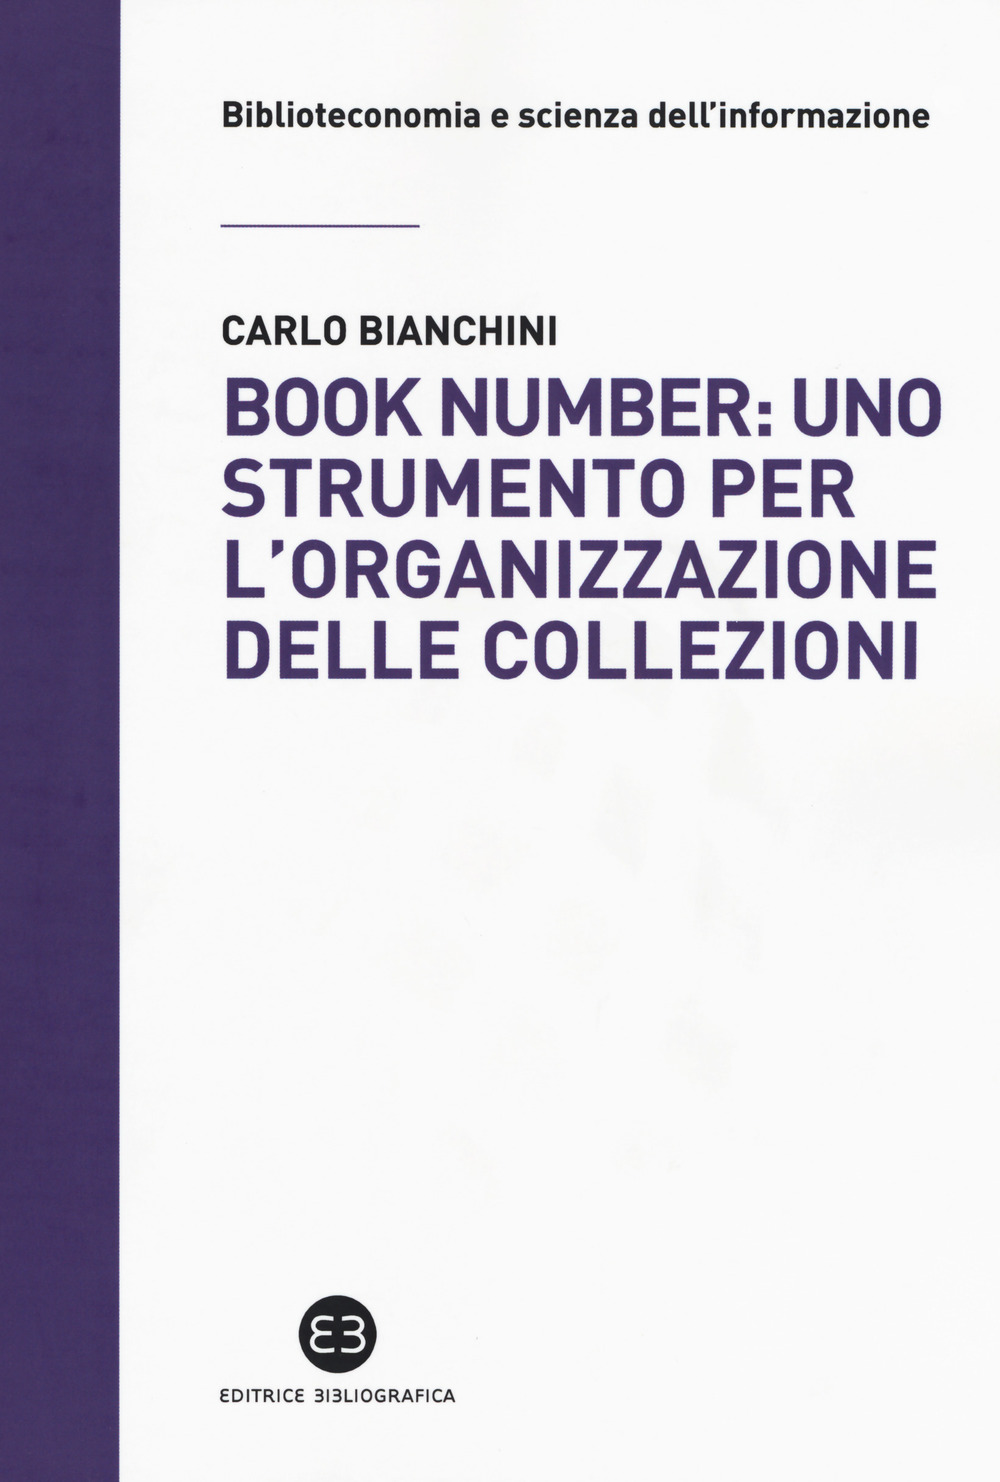 Libri Carlo Bianchini - Book Number: Uno Strumento Per L'Organizzazione Delle Collezioni NUOVO SIGILLATO, EDIZIONE DEL 26/05/2017 SUBITO DISPONIBILE